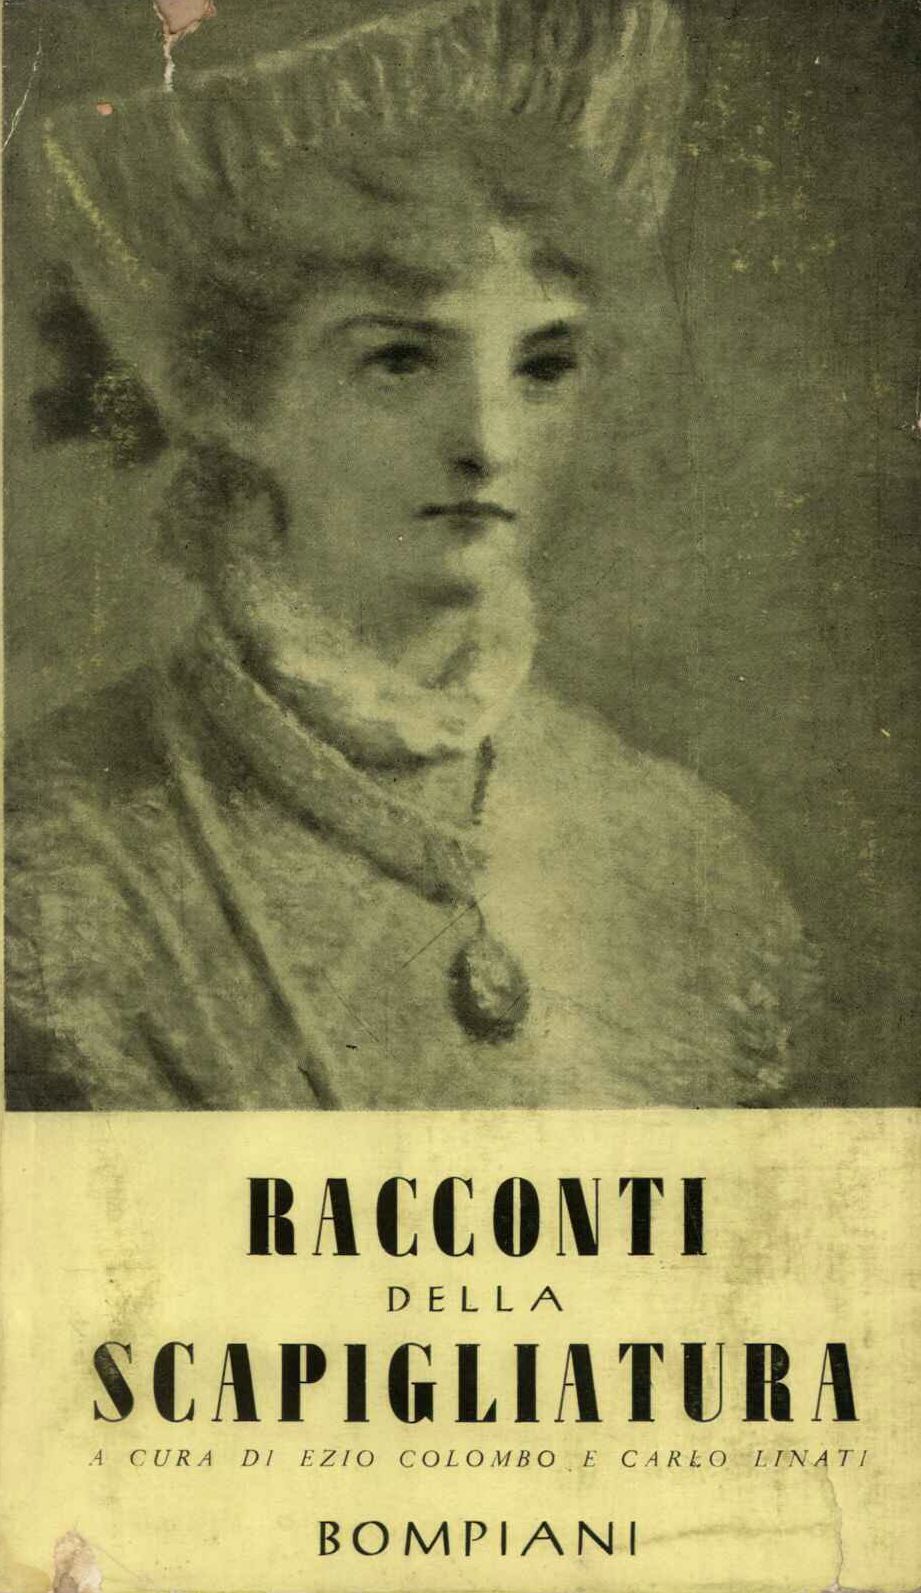 RACCONTI DELLA SCAPIGLIATURA (1860 - 1910)